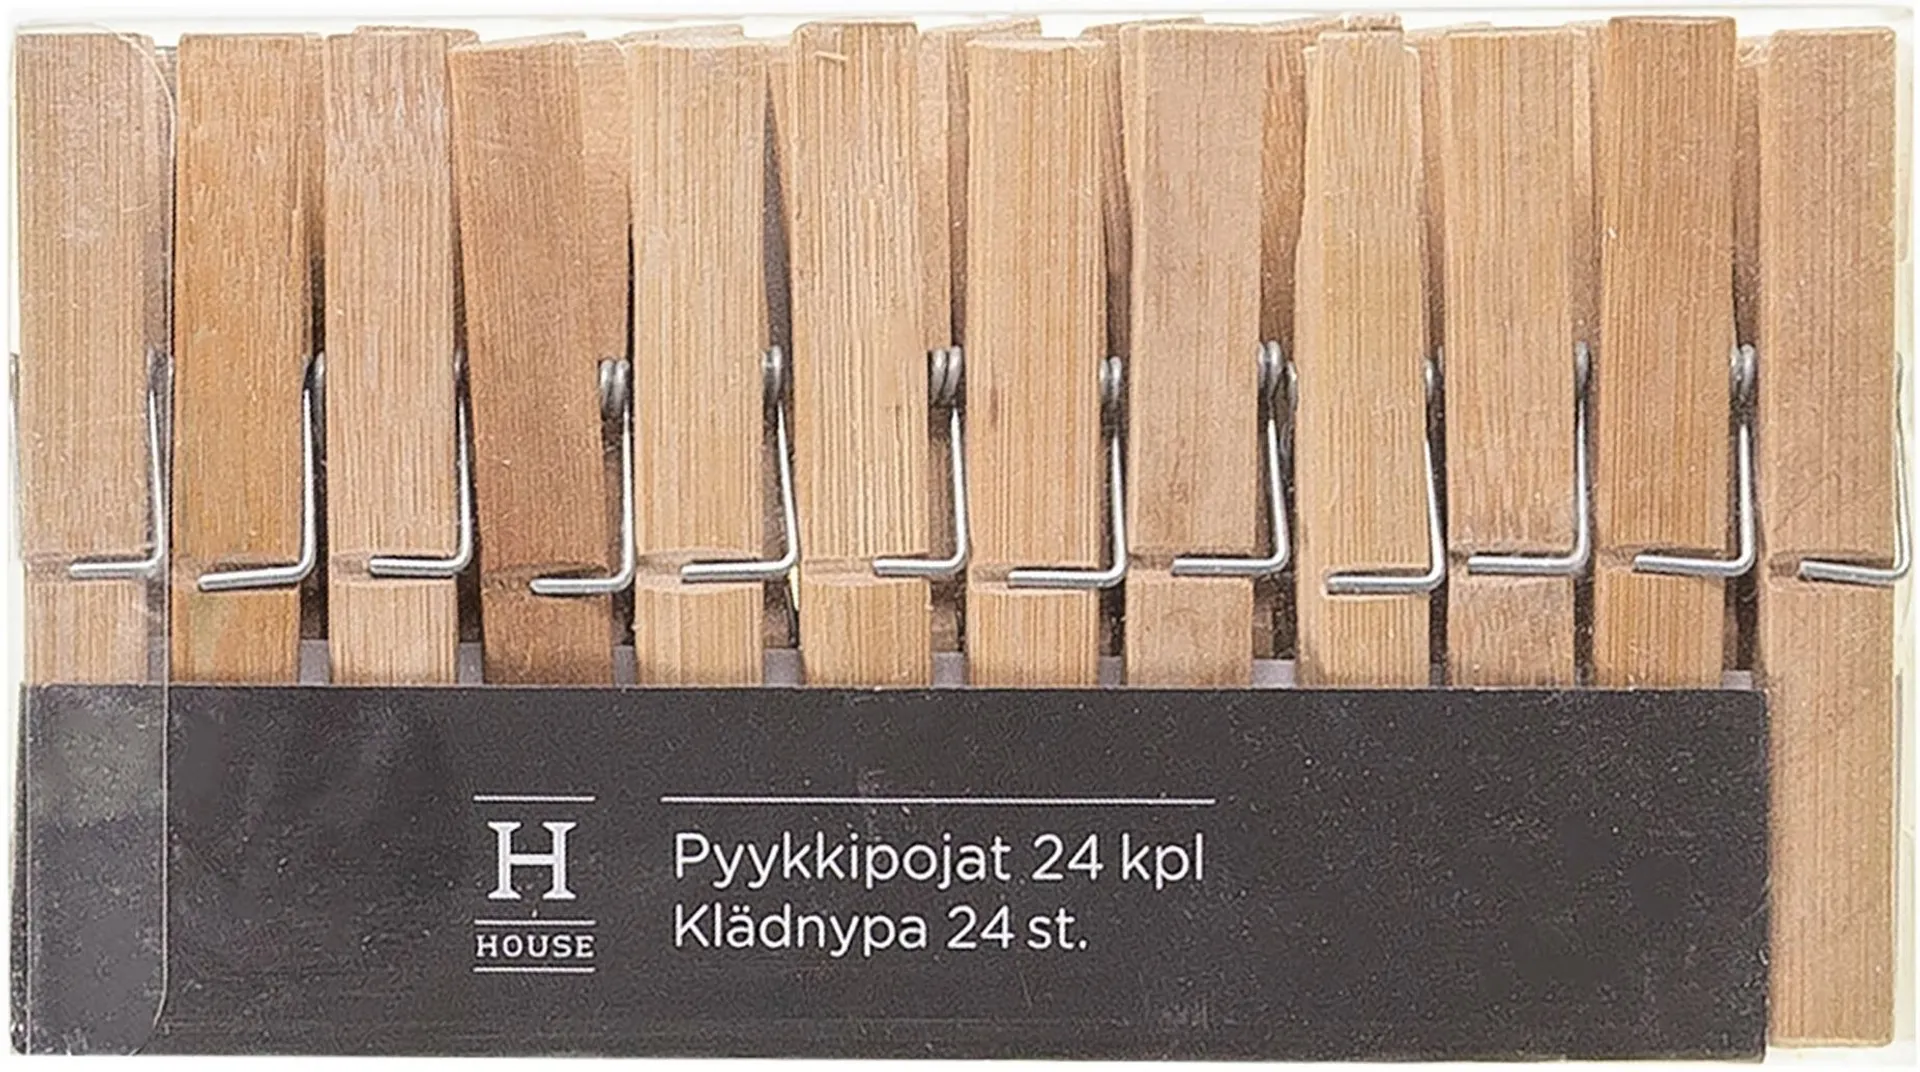 House pyykkipojat 24 kpl bambu